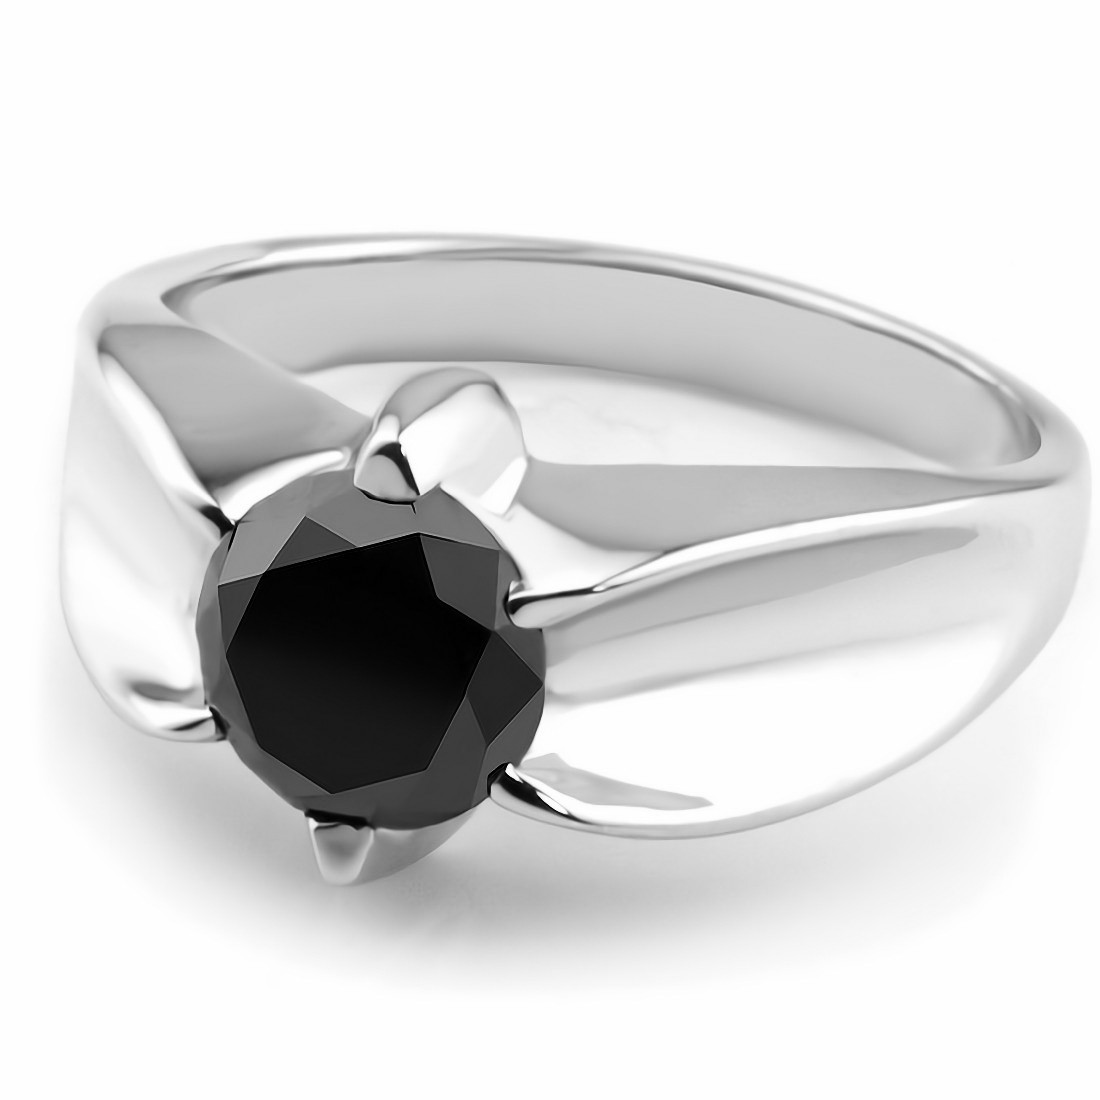 Large 1 Carat Black Onyx Diamond Ring For Men 14K Yellow Gold Pinky Ring  001265